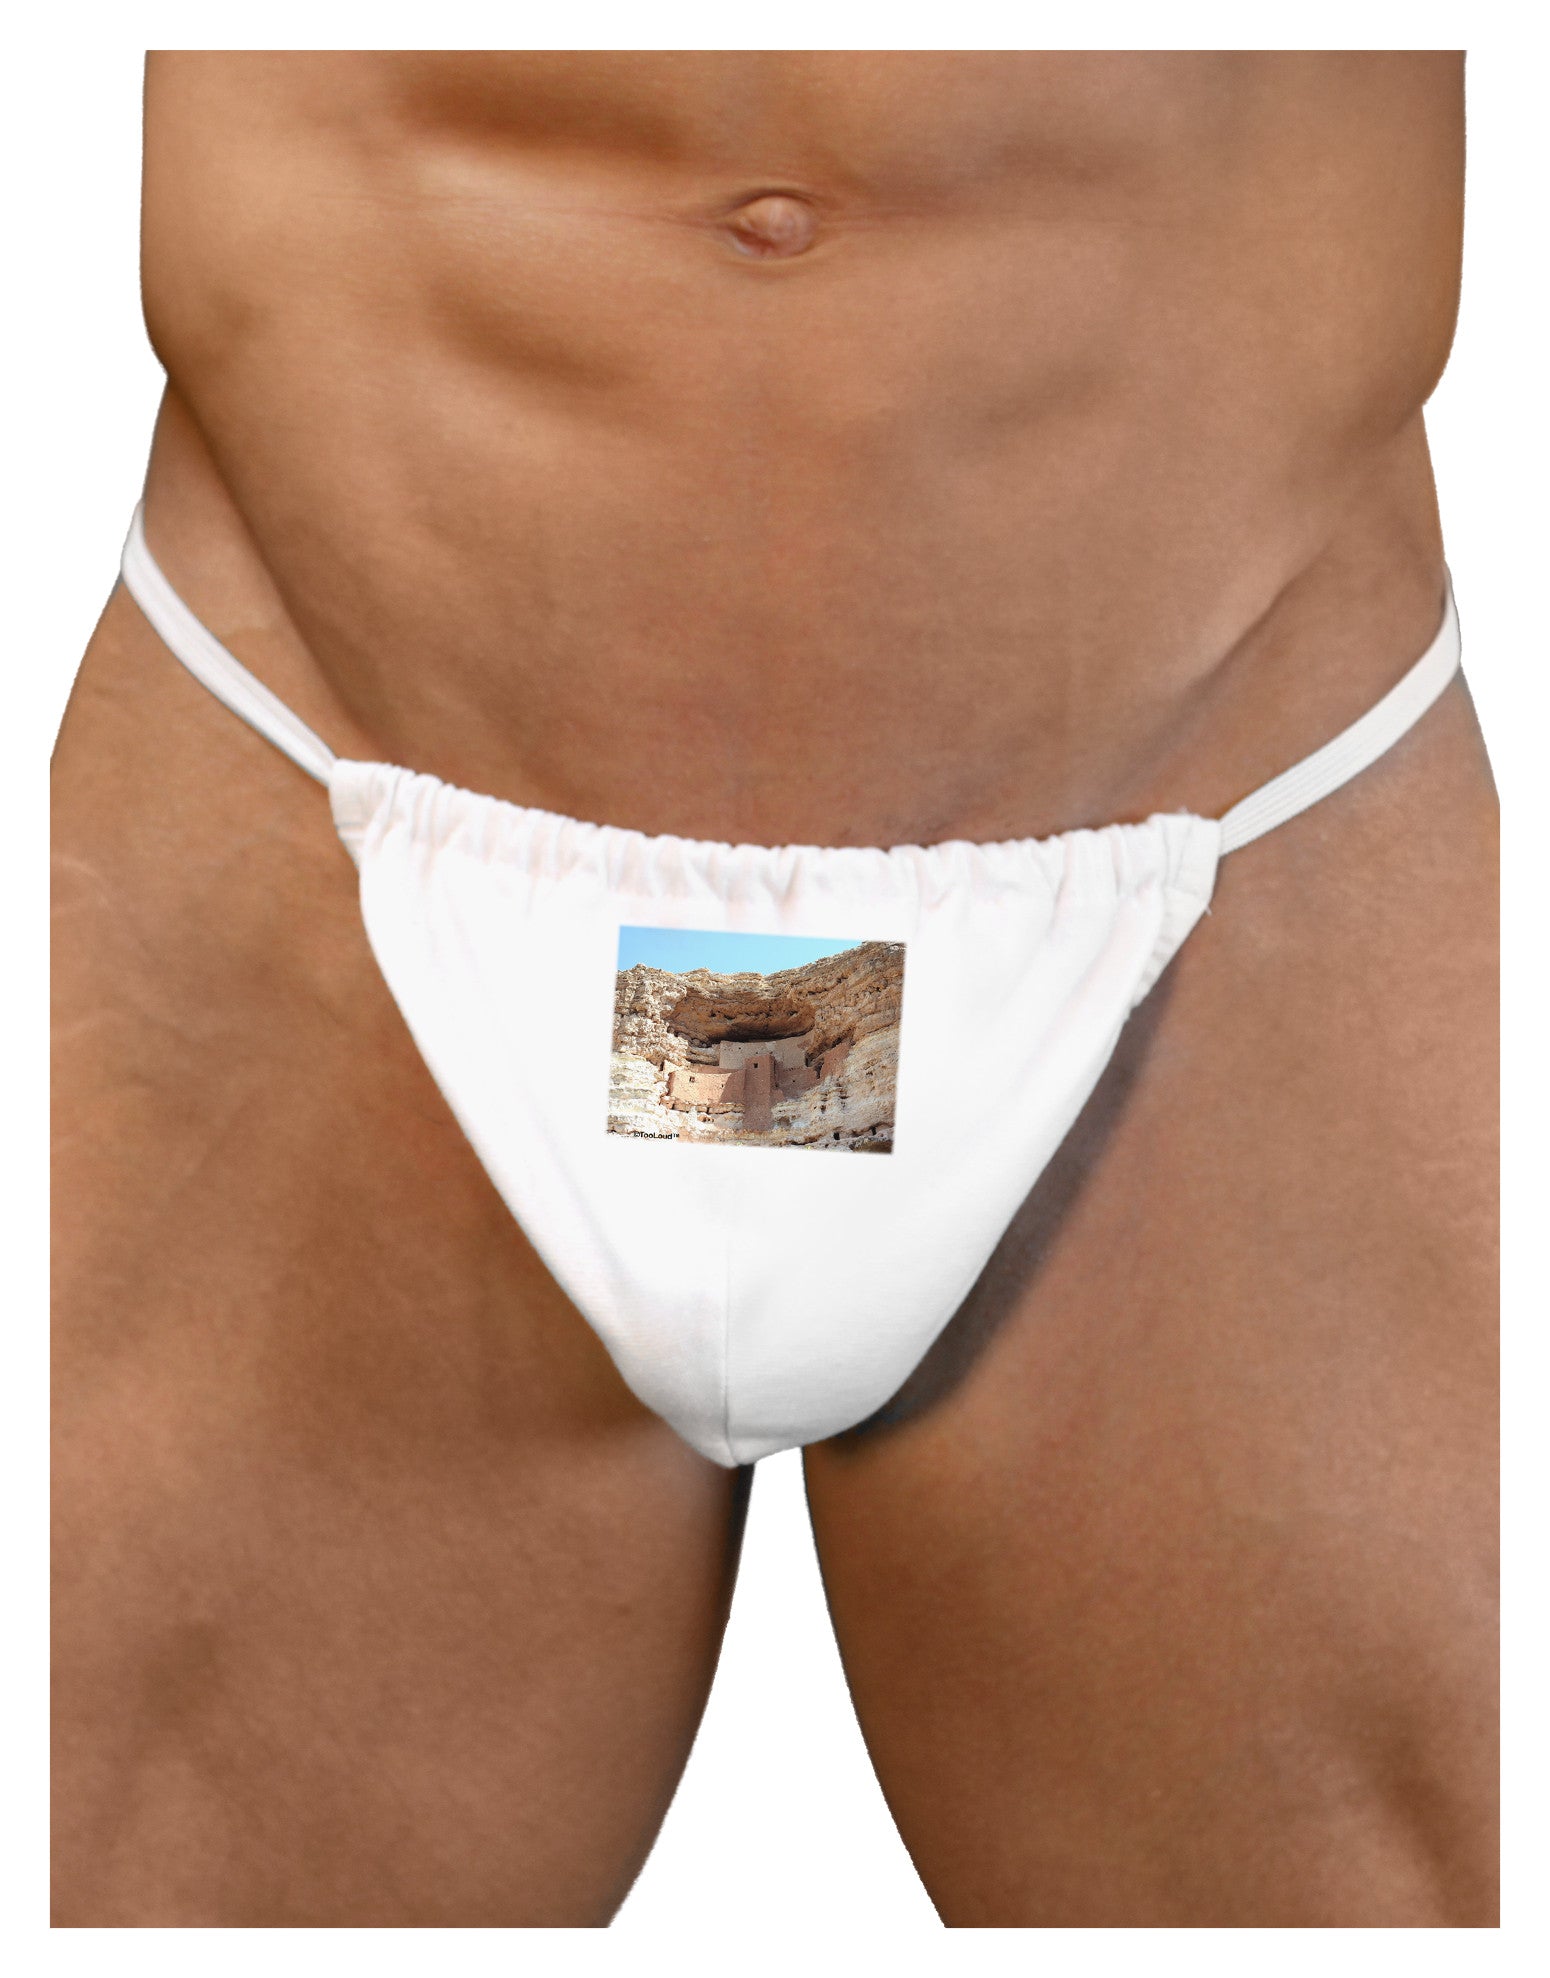 Chateau - Men Underwear Brief - Men's Briefs - Men's Printed